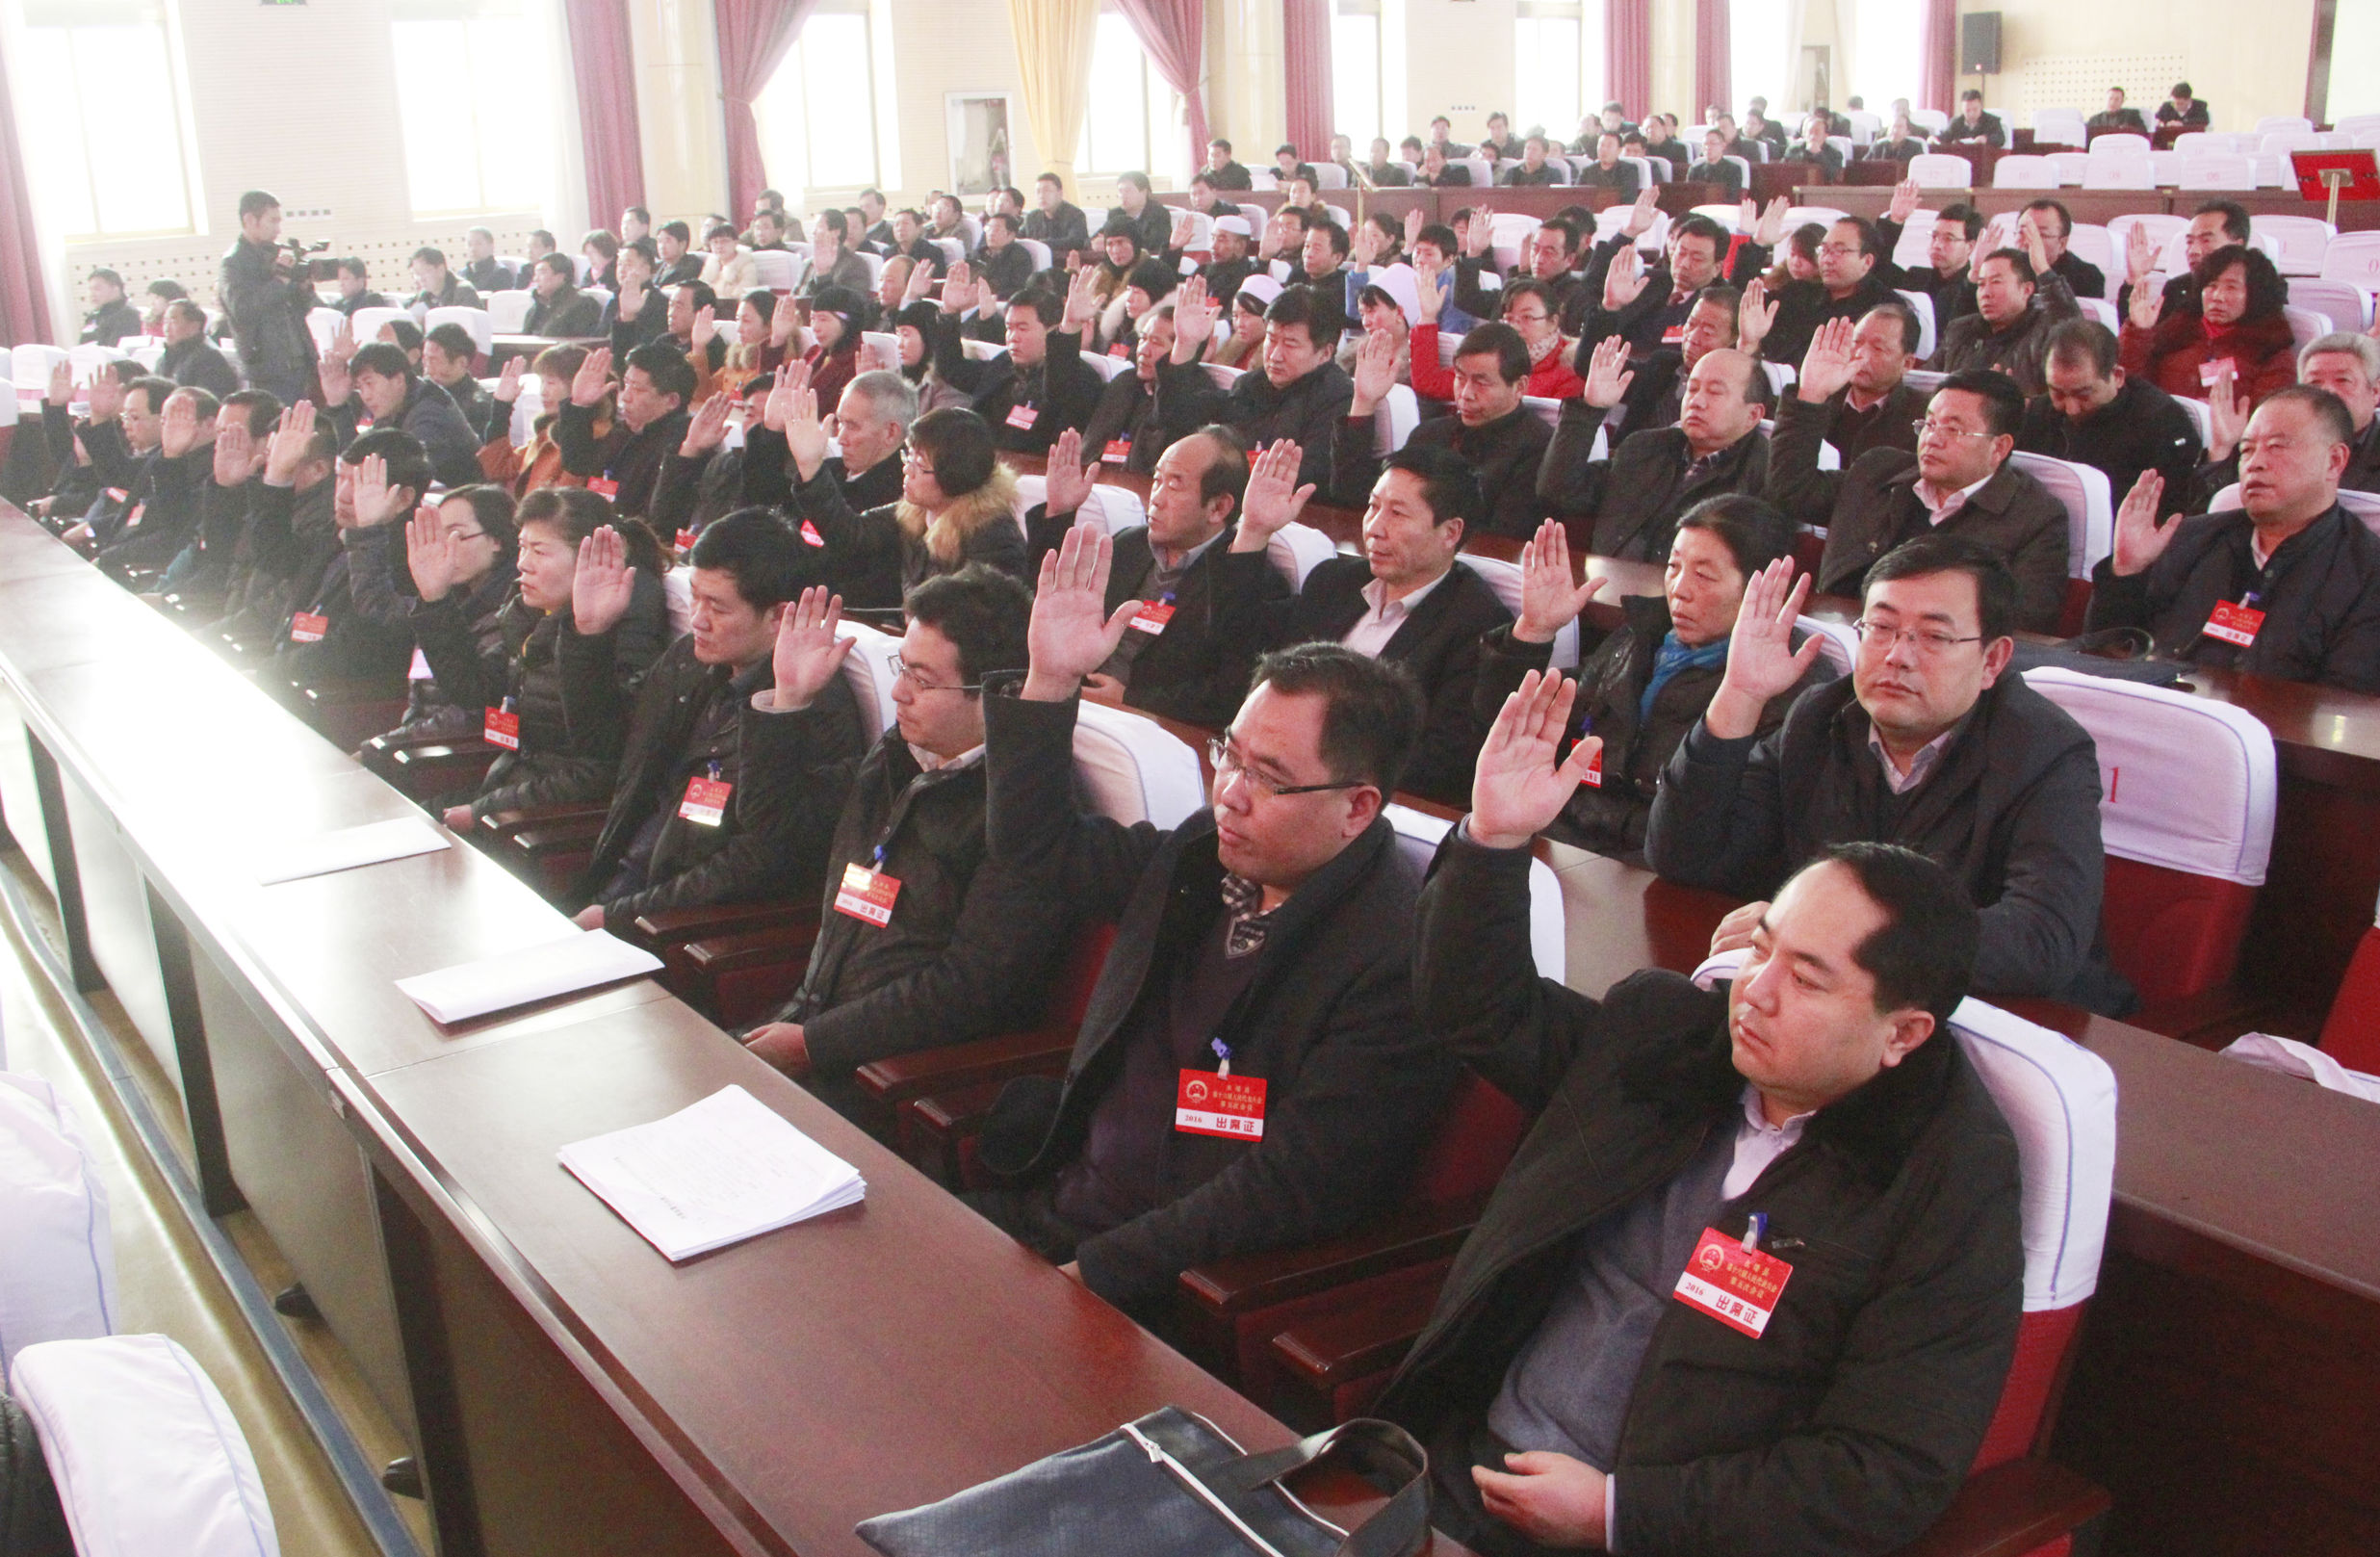 永靖县第十六届人民代表大会第五次会议闭幕